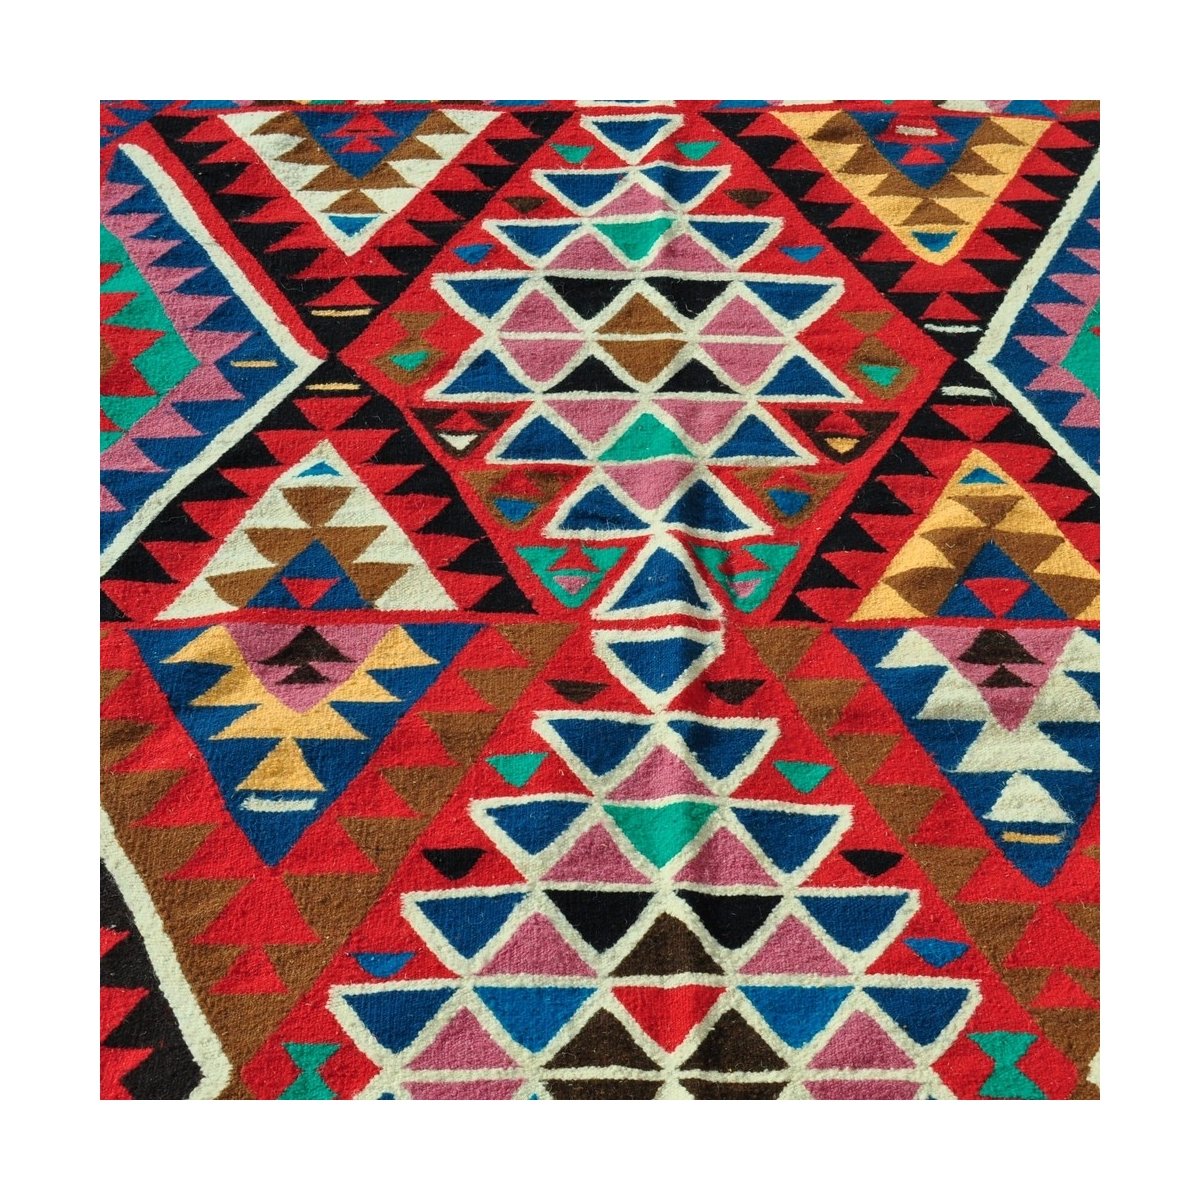 Tapete berbere Grande Tapete Kilim Sahar 150x250 Multicor (Tecidos à mão, Lã, Tunísia) Tapete tunisiano kilim, estilo marroquino